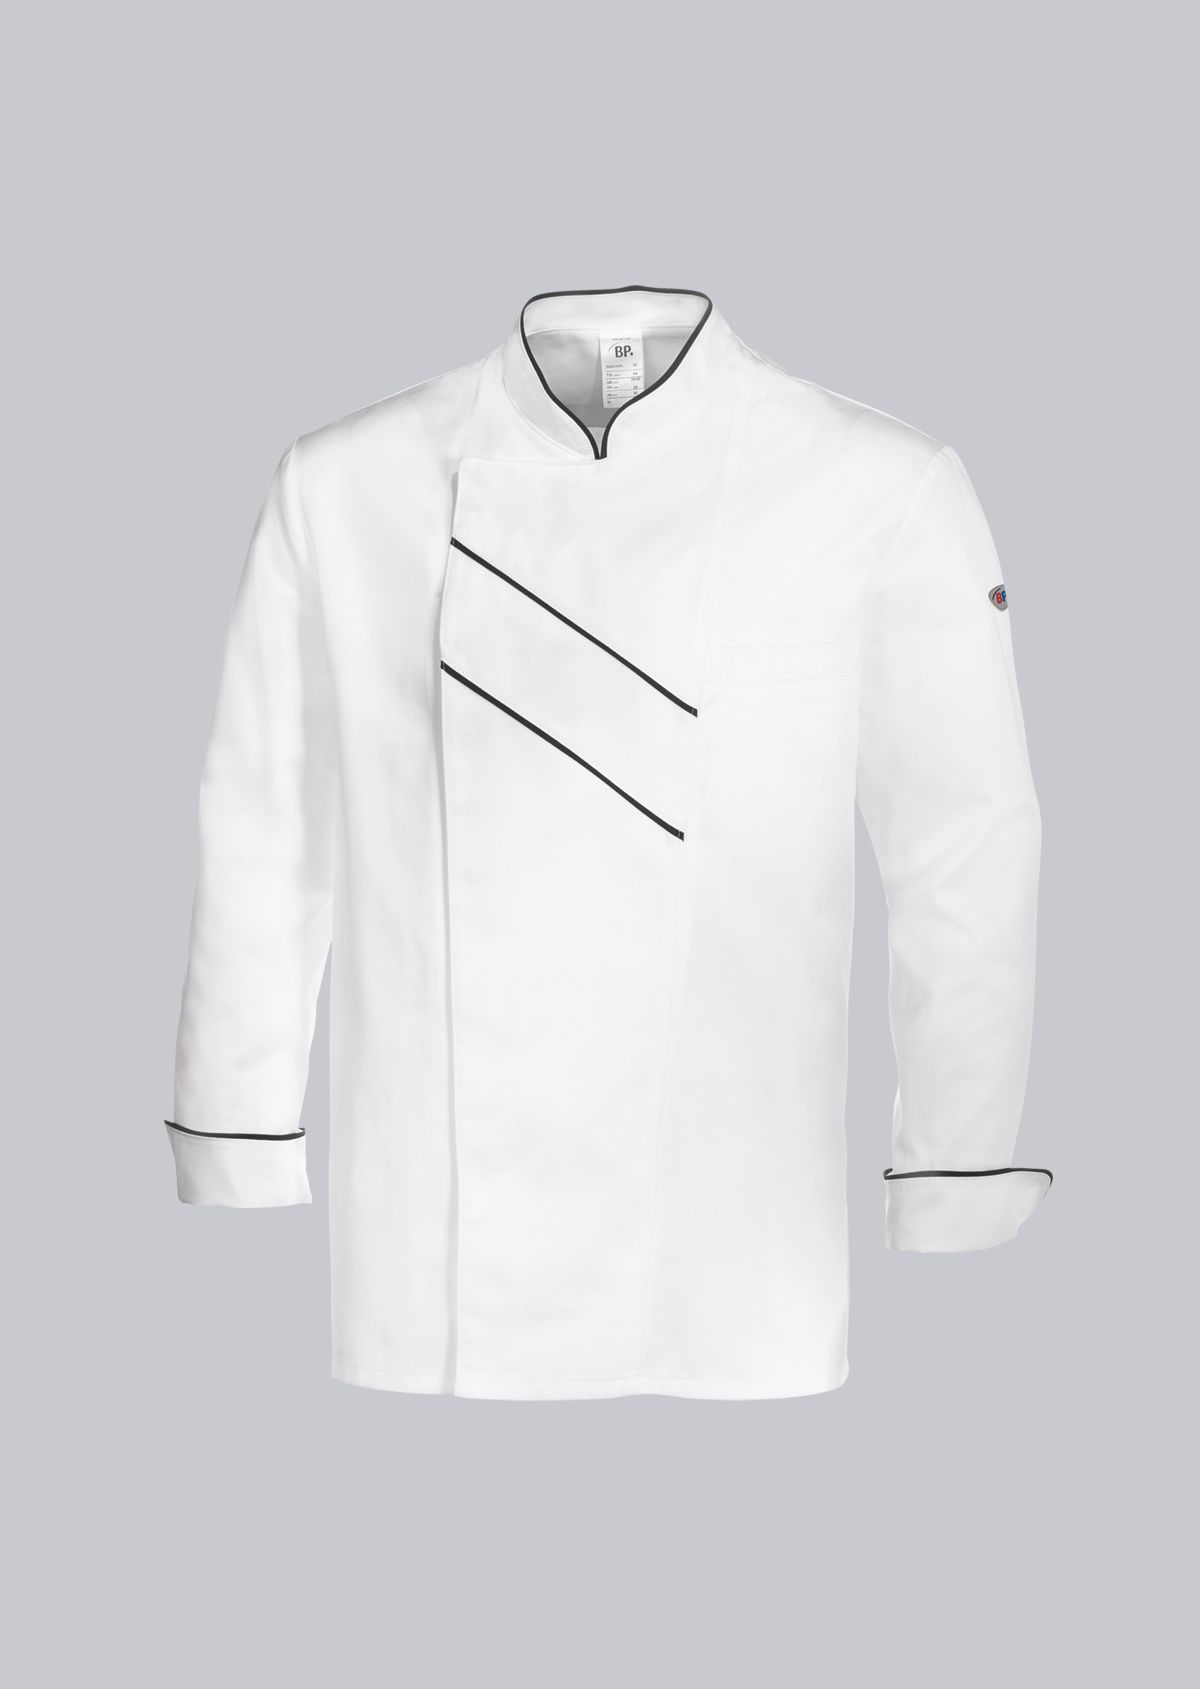 BP® Kochjacke 1547-400 Kochbekleidung Küchenkleidung Herrenkochjacke Koch Gastro 